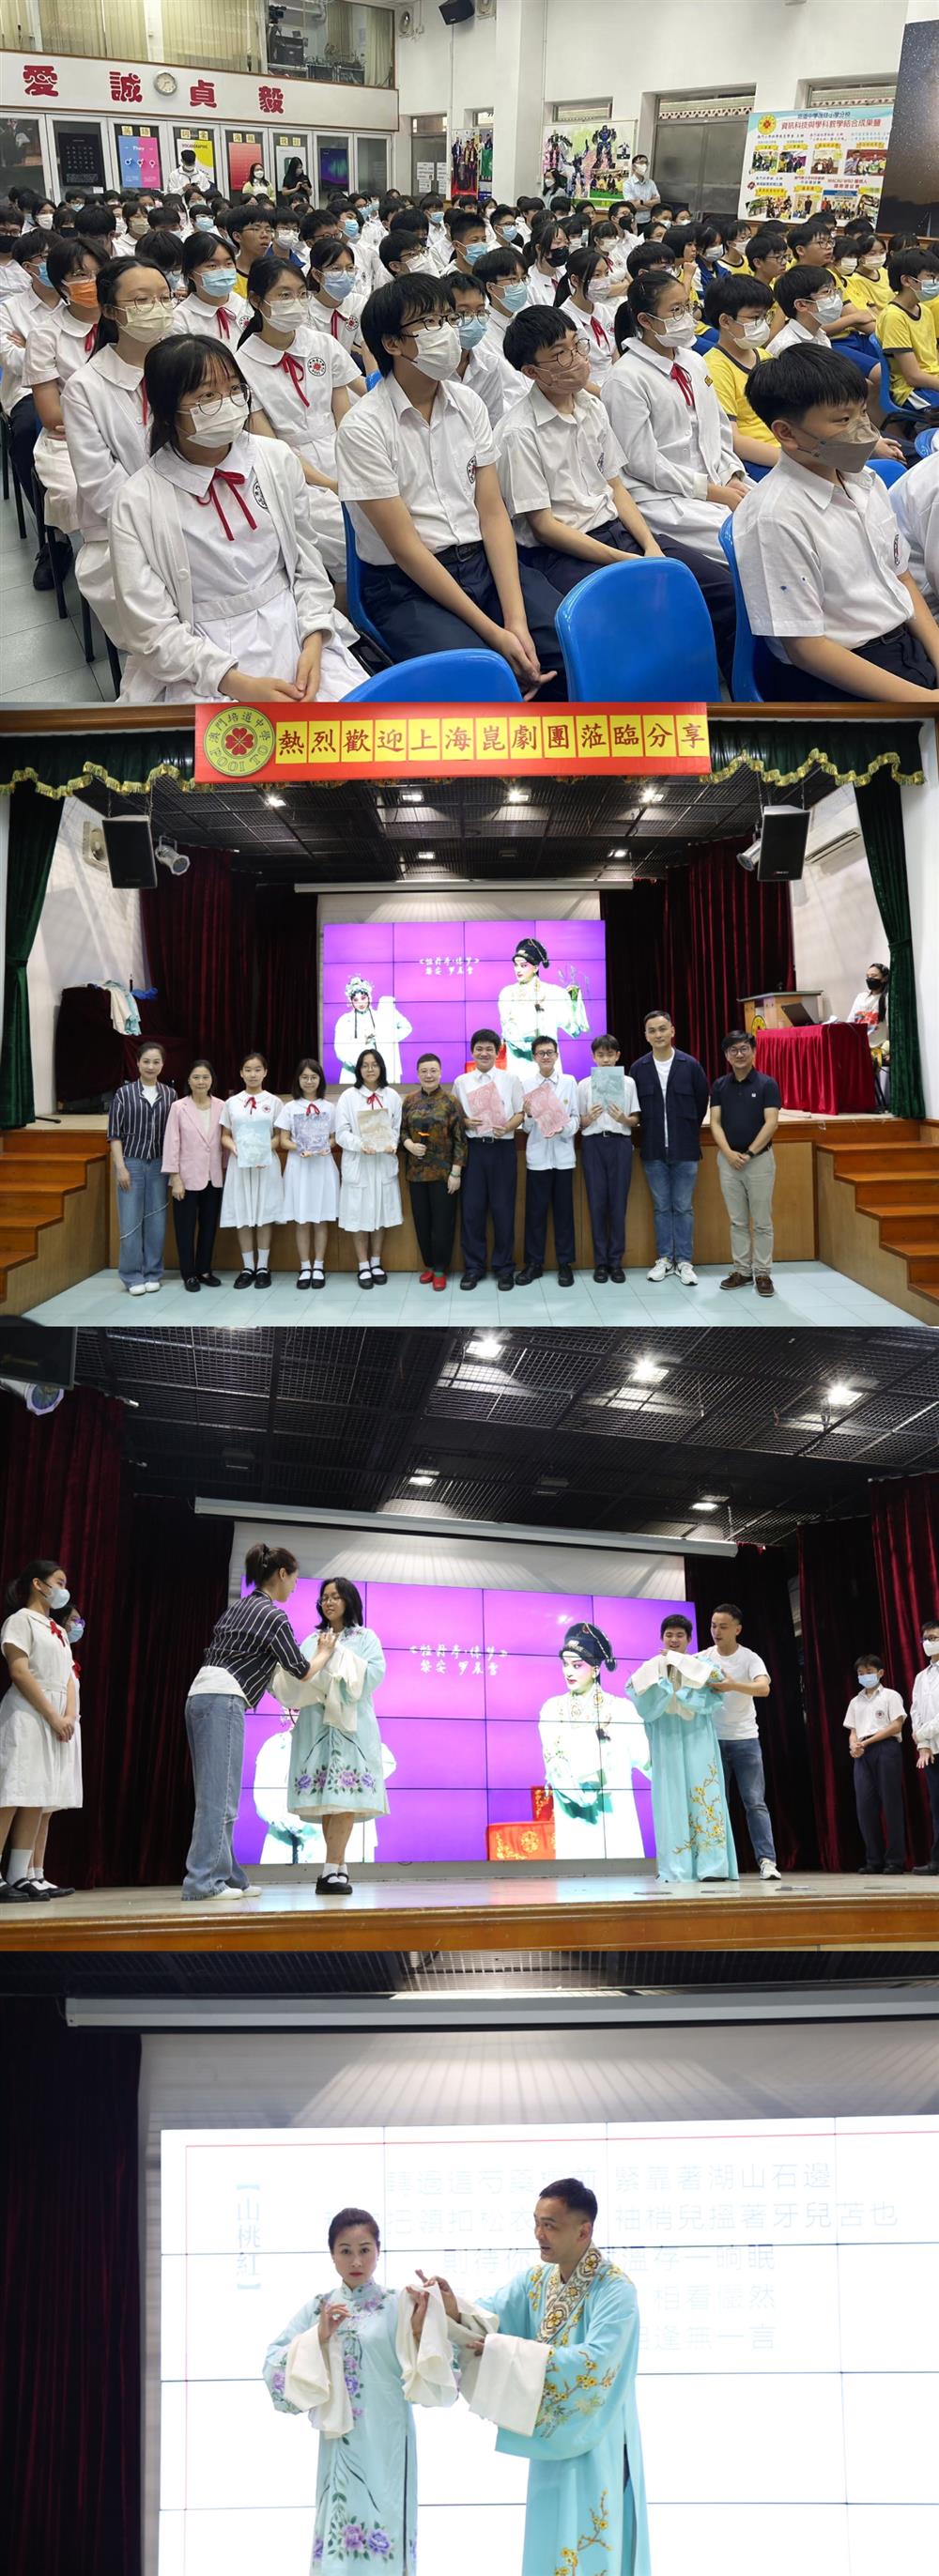 上海昆剧团撒播传统文化种子,在澳门特首贺一诚母校戏剧|澳门|文化